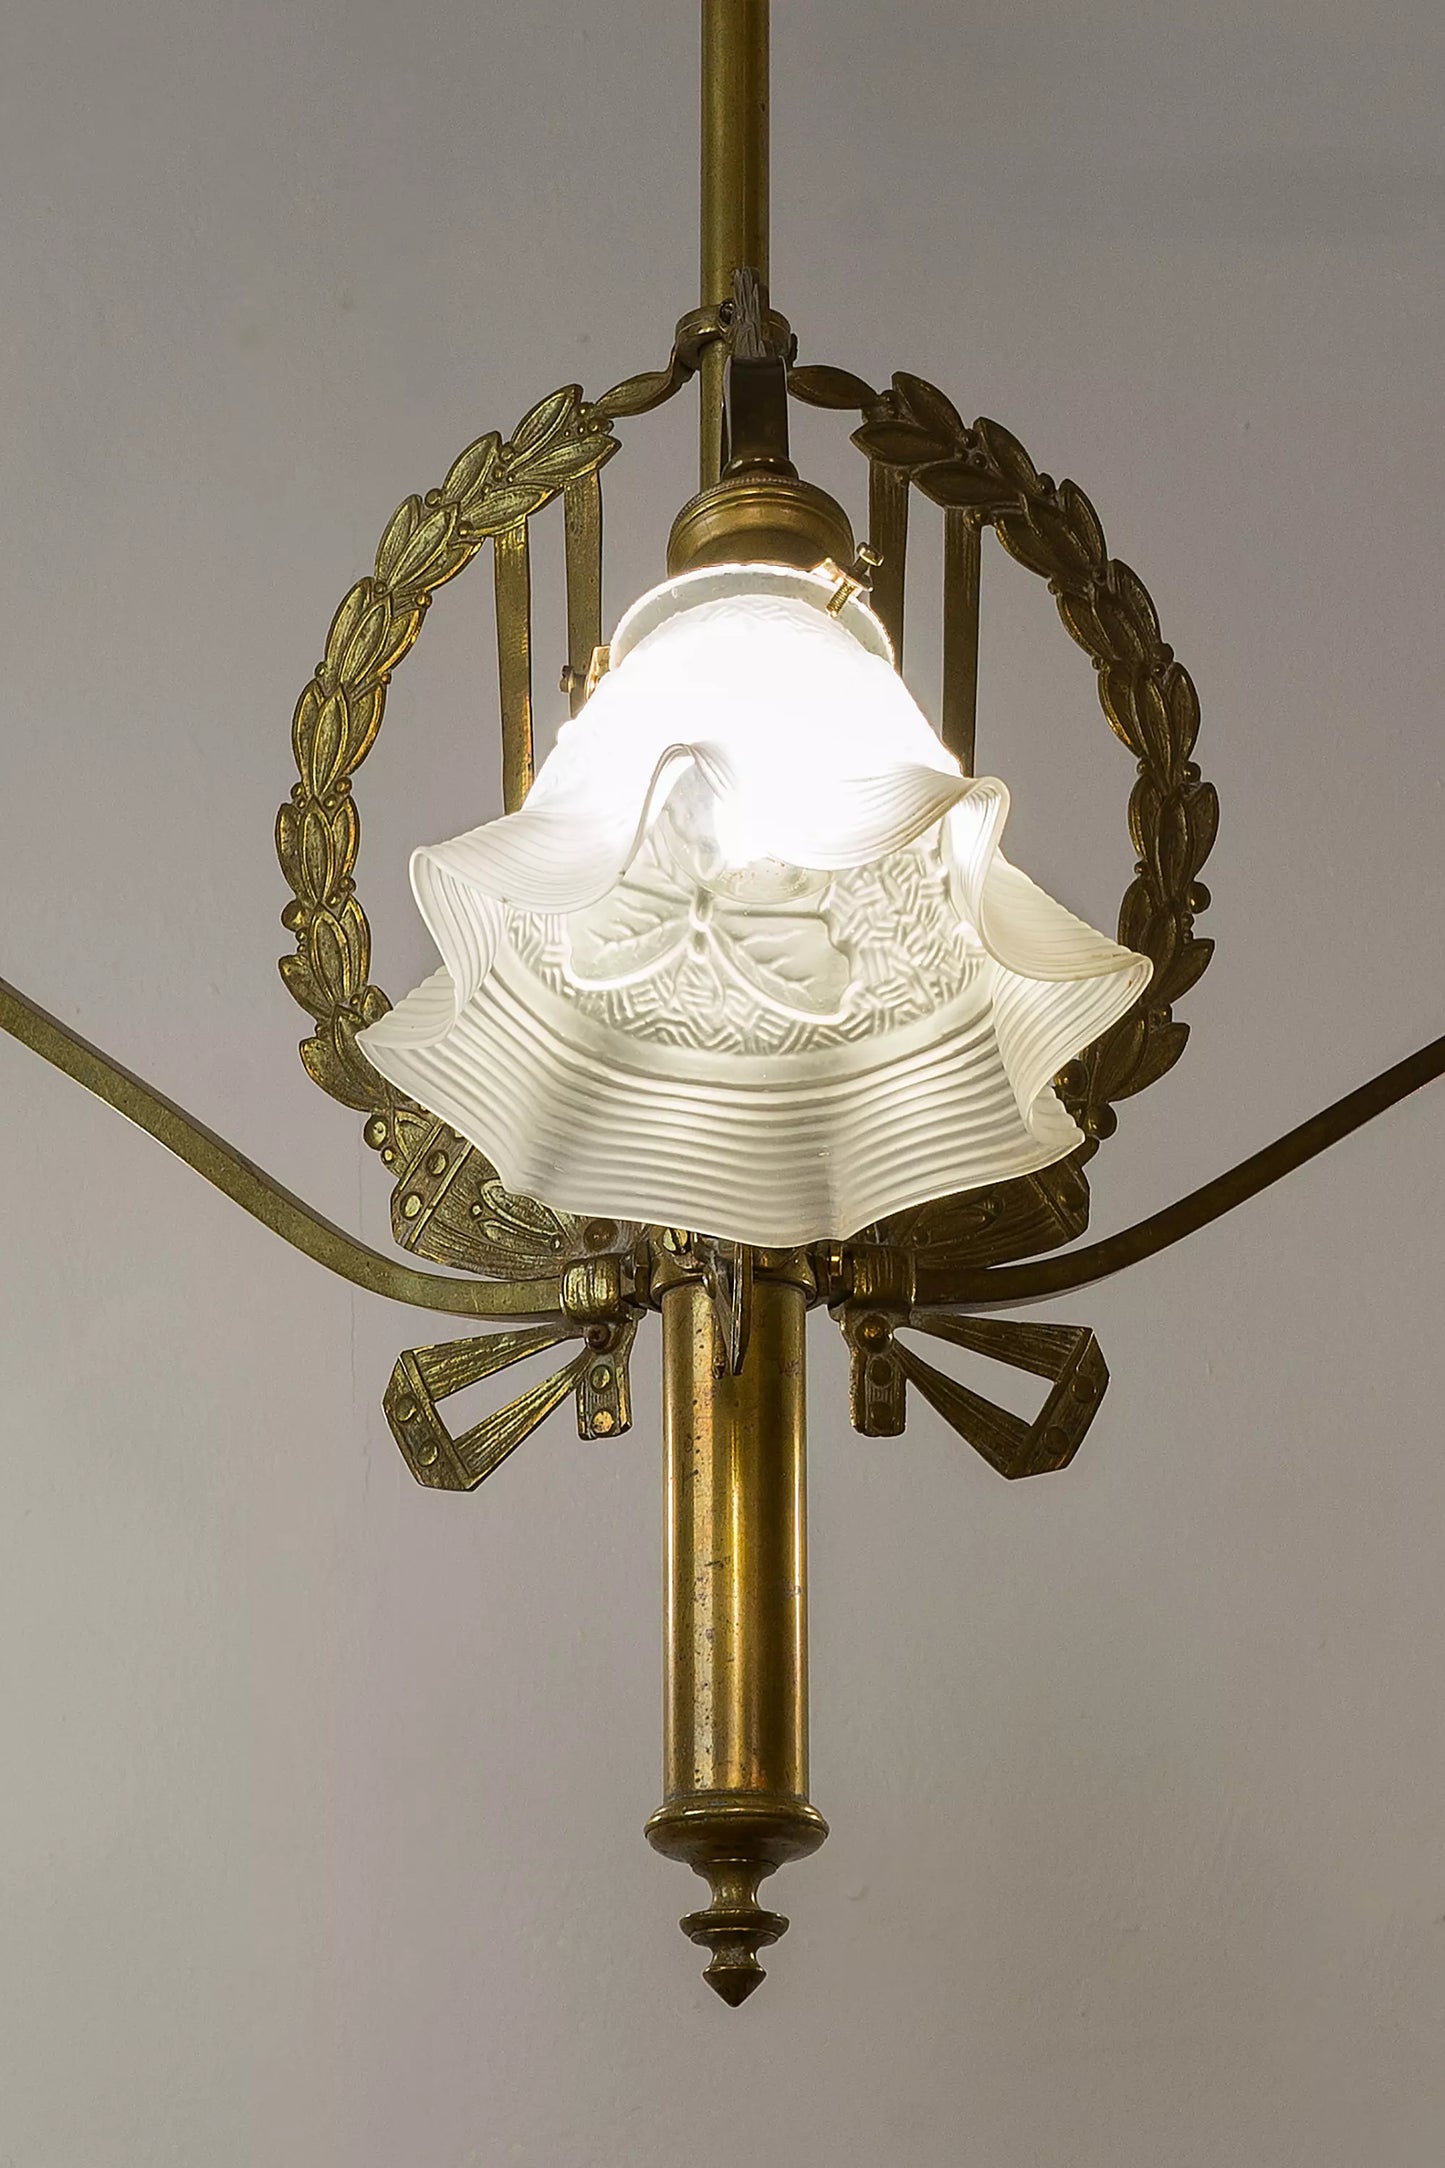 Lampadario elegante risalente al periodo 1910-1920, con un design caratteristico della La Belle Époque francese.| Lo Stile Italiano